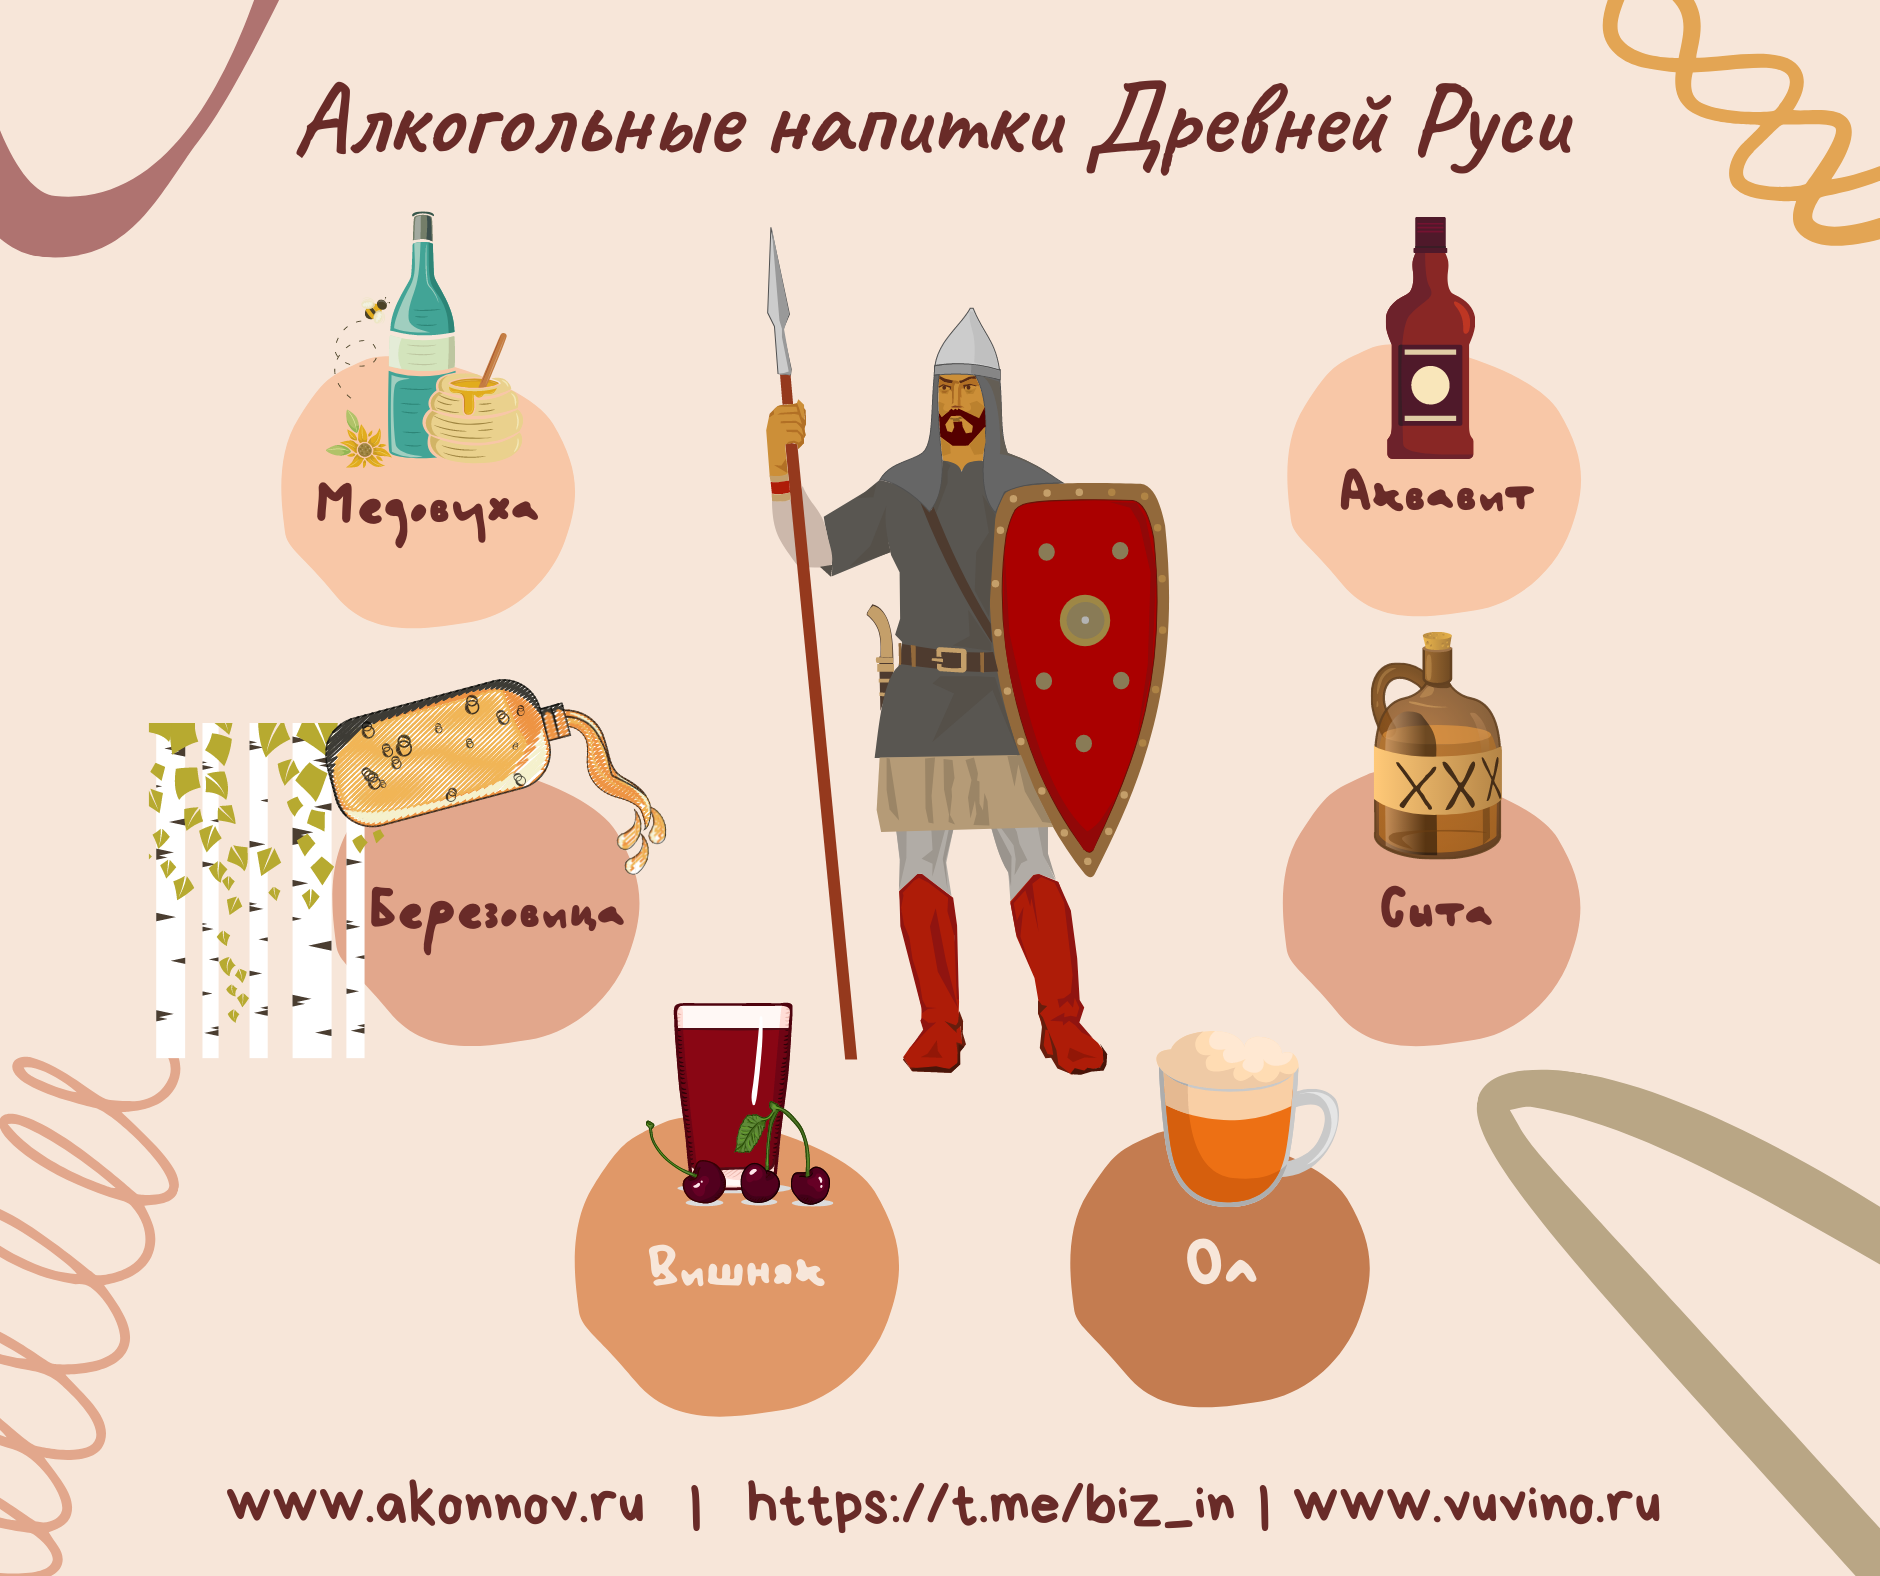 Алкогольные напитки Древней Руси